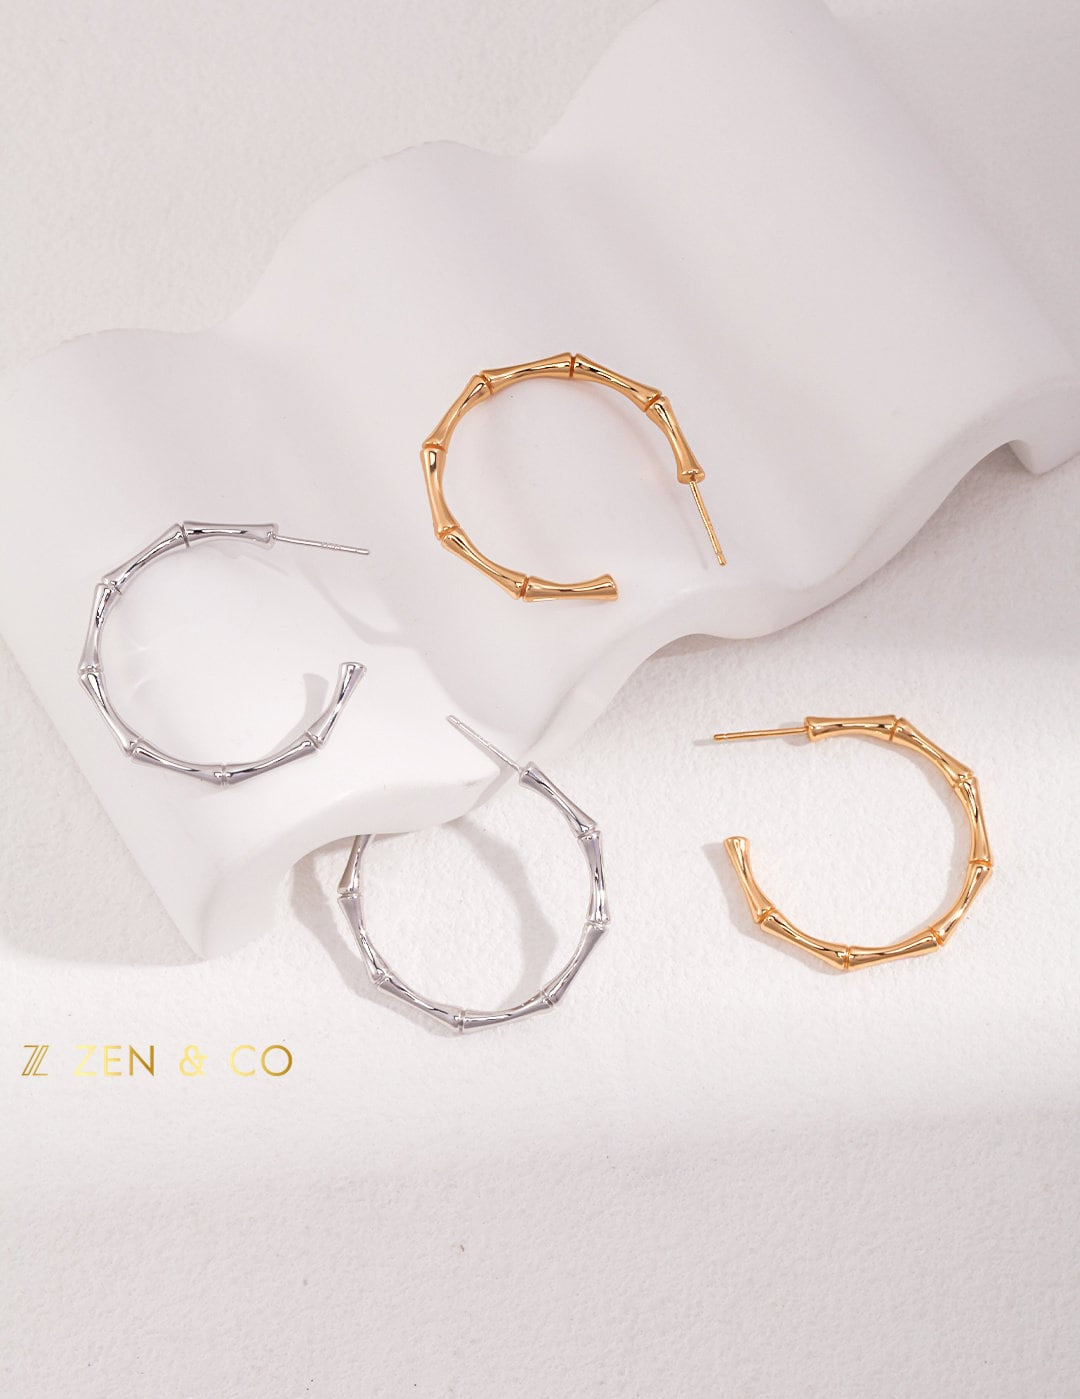 ZEN Big round bamboo shaped hoop earrings - ZEN&CO Studio